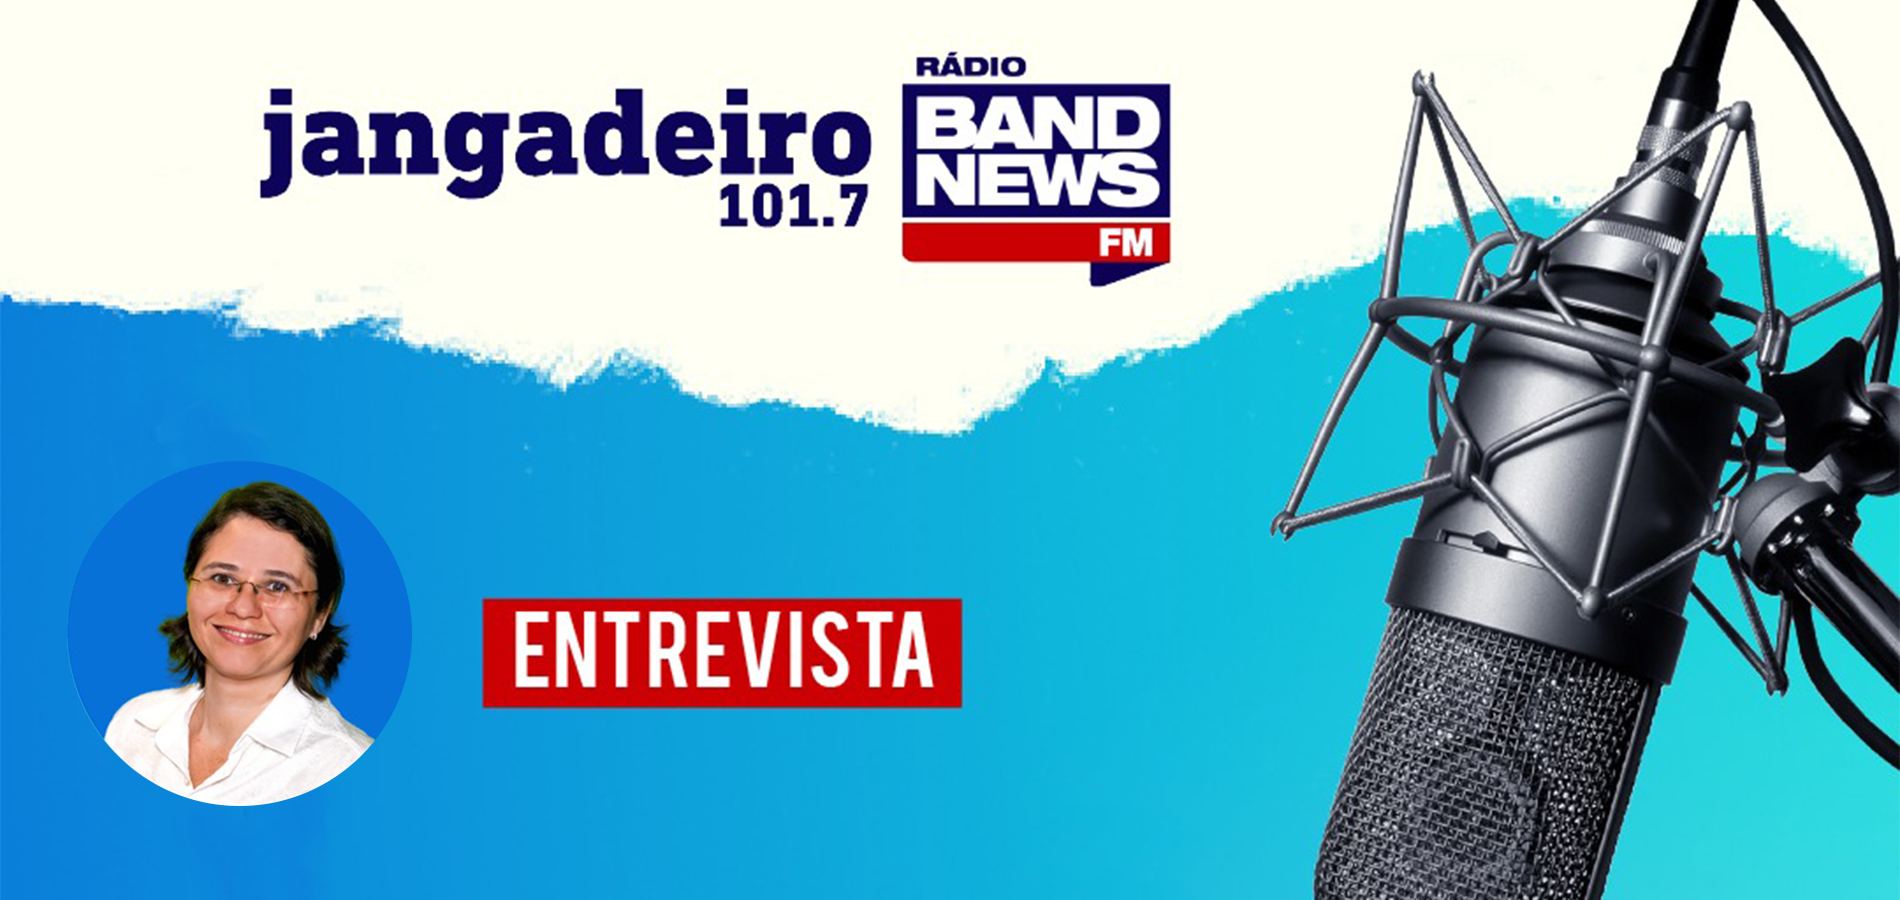 Em entrevista para a Rádio Jangadeiro Band News FM, a vice-presidente de Ações Institucionais, Karla Carioca, fala sobre os dois programas lançados pela PGFN